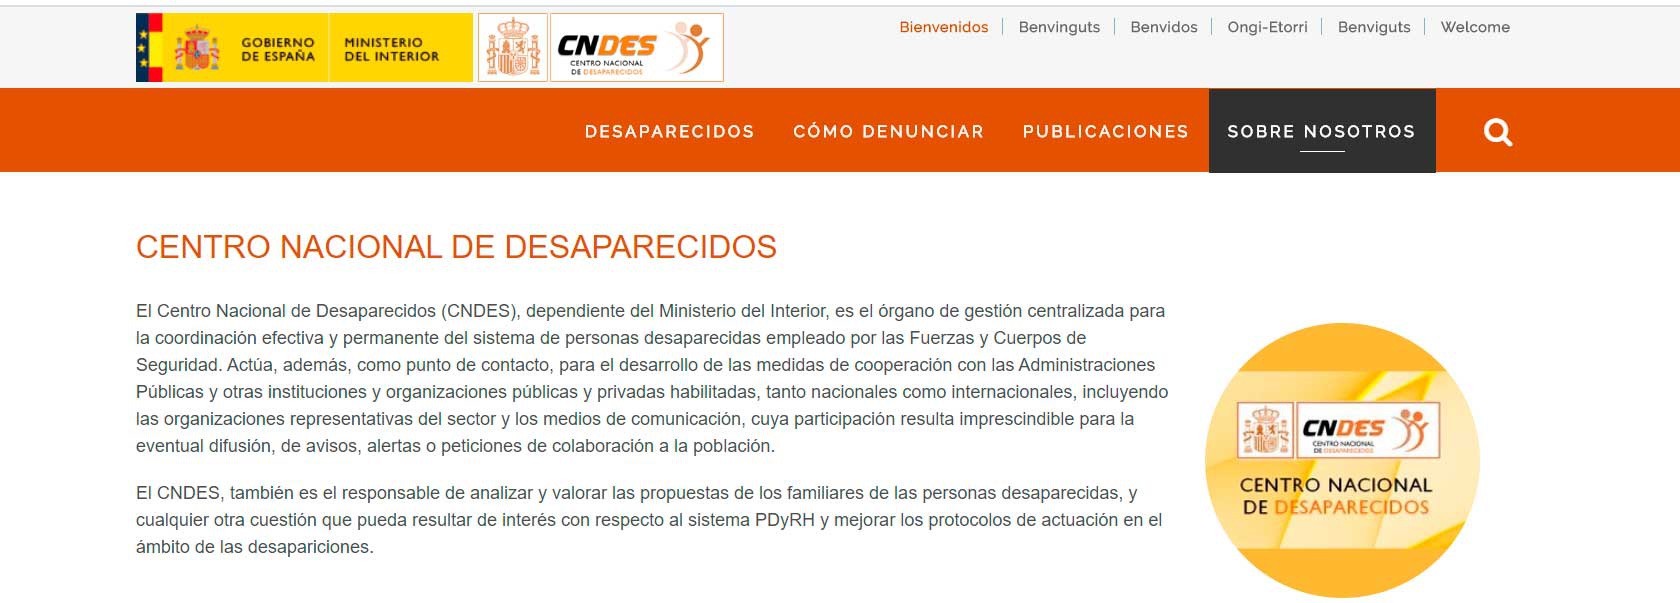 Centro Nacional de Desaparecidos (CNDES)